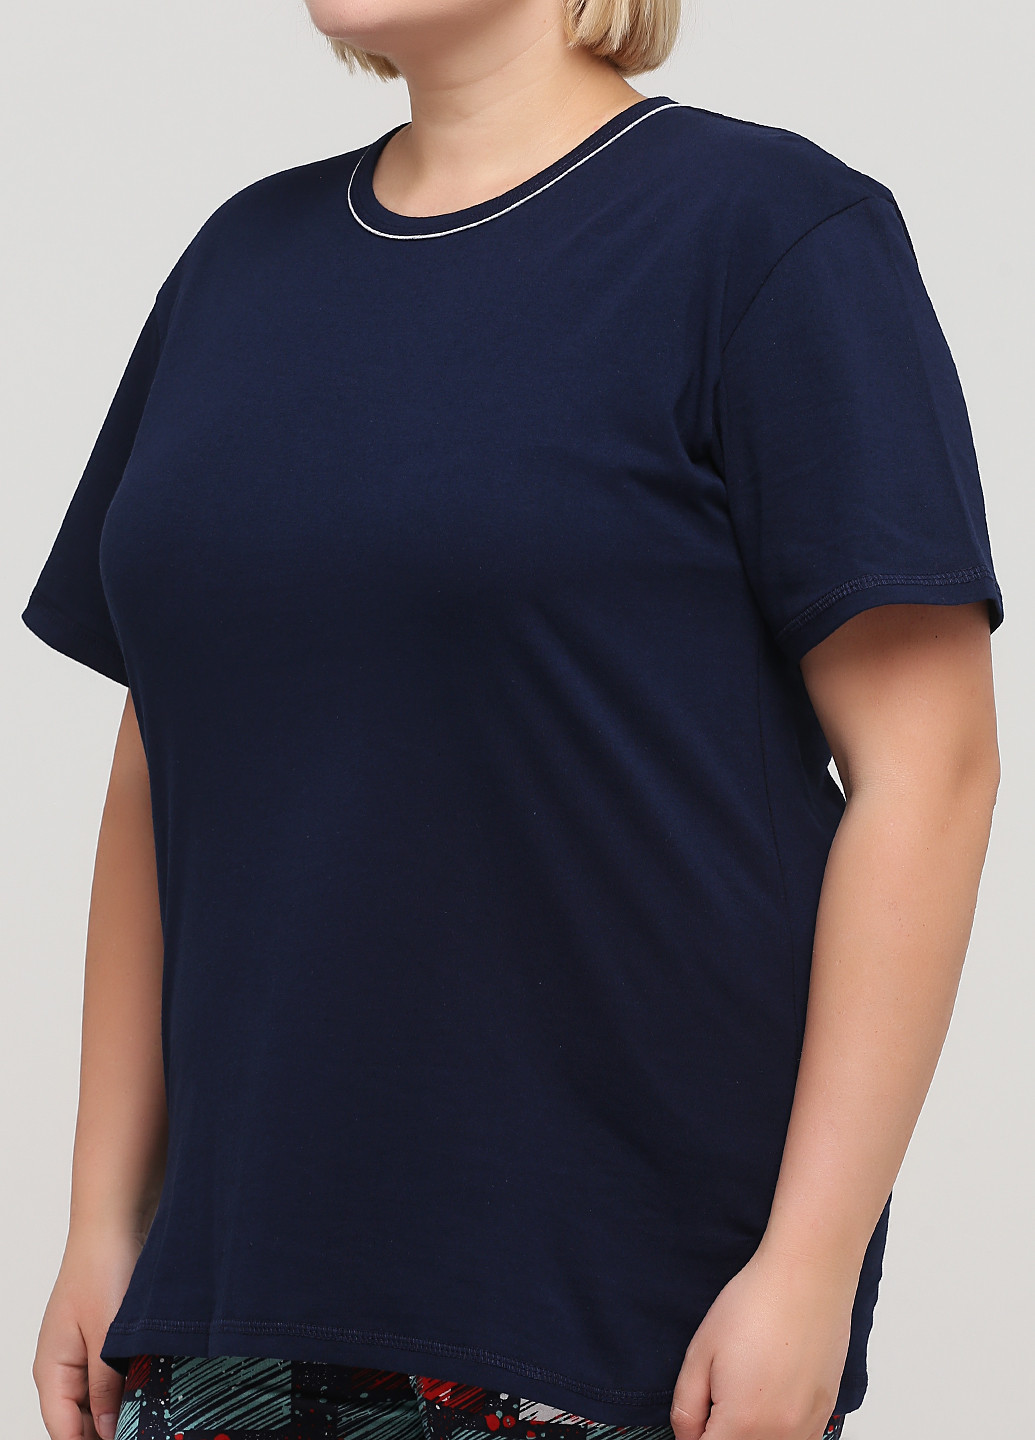 Синя всесезон піжама (футболка, шорти) футболка + шорти Трикомир